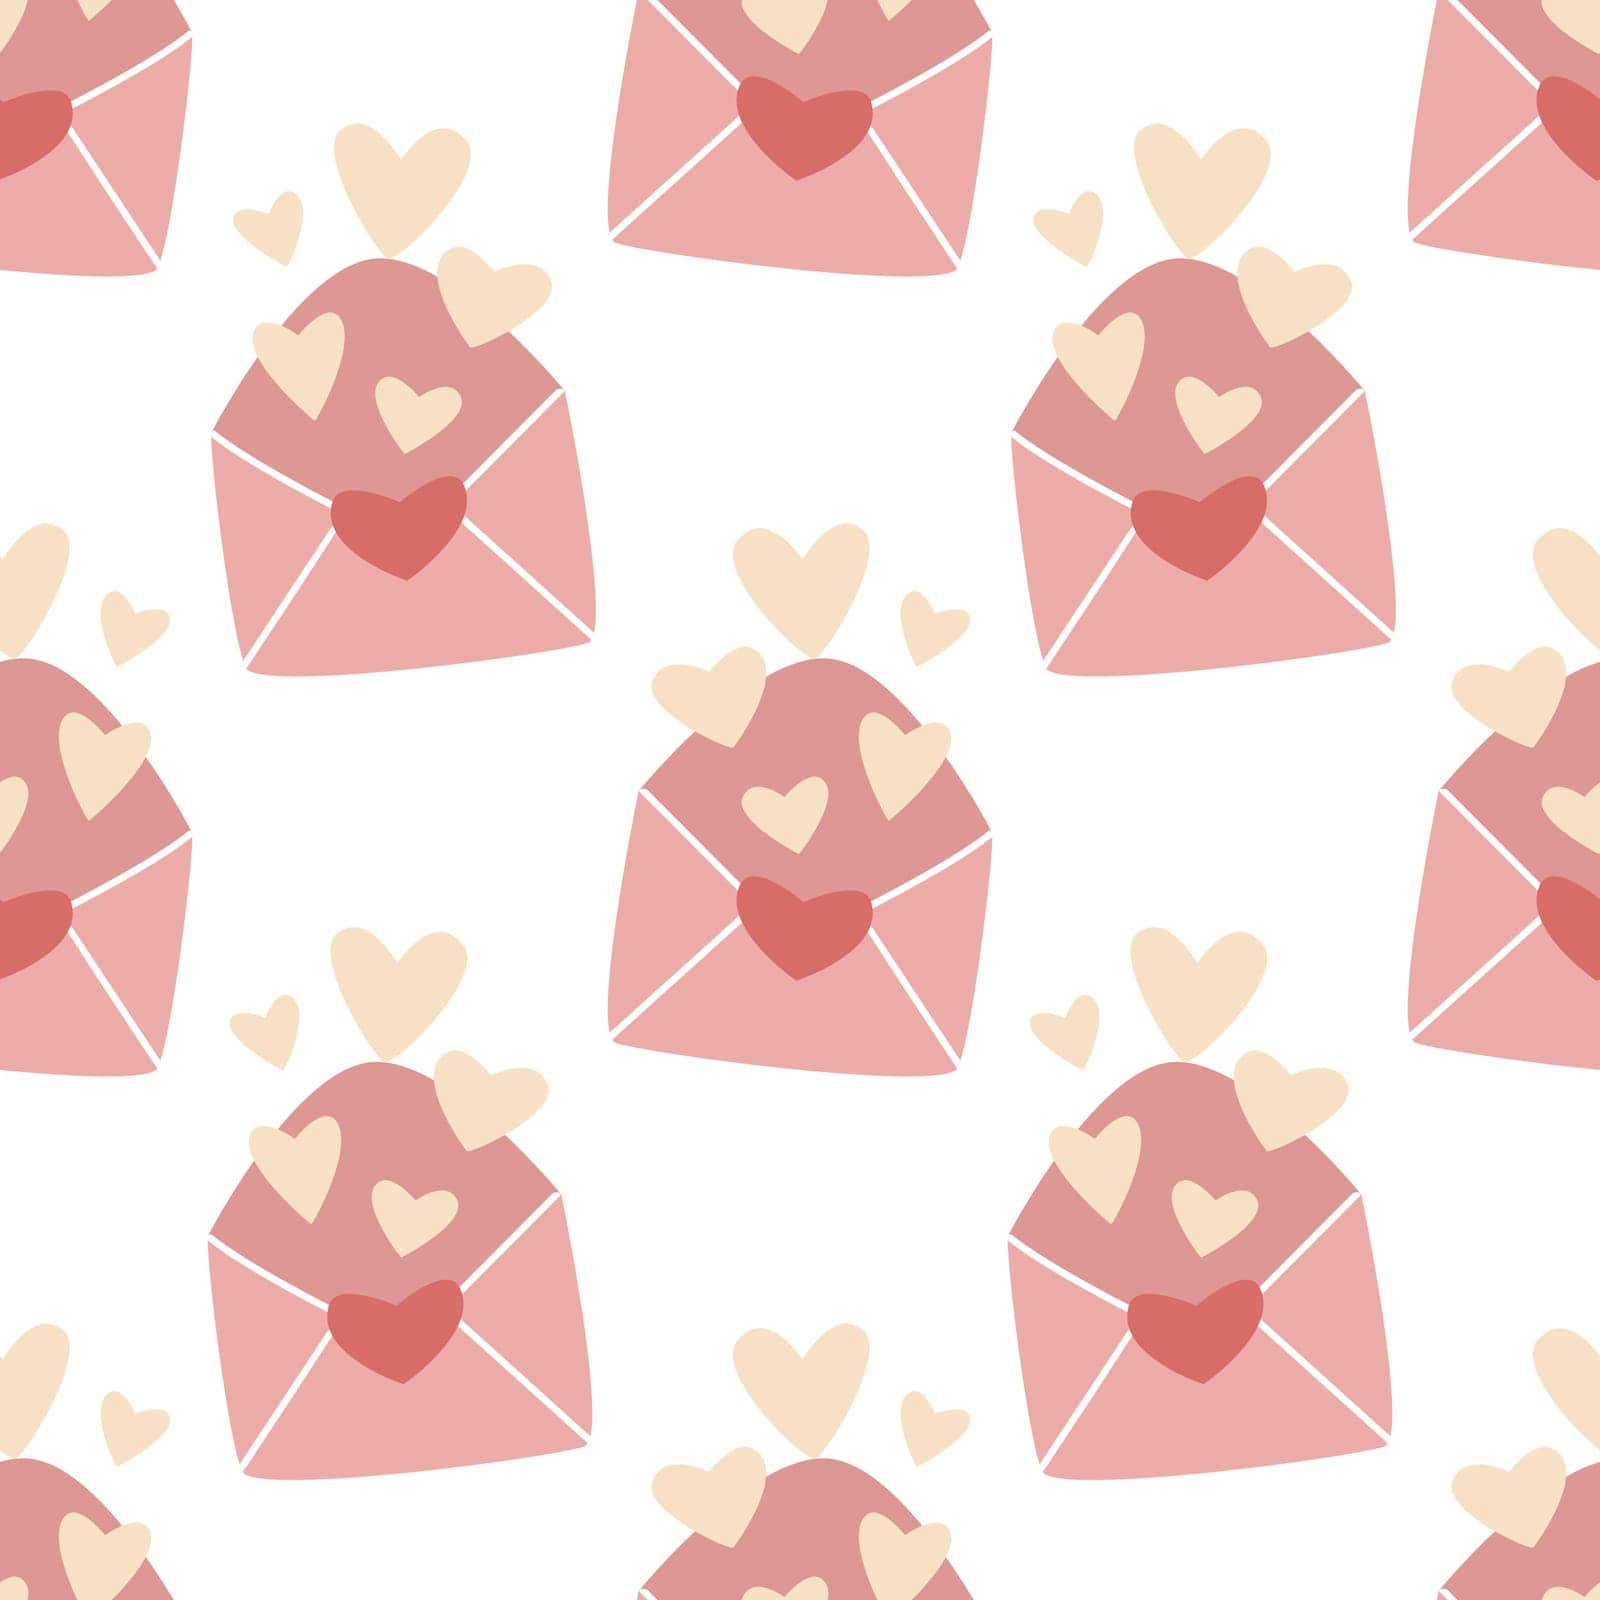 Love letters seamless romantic pattern by TassiaK